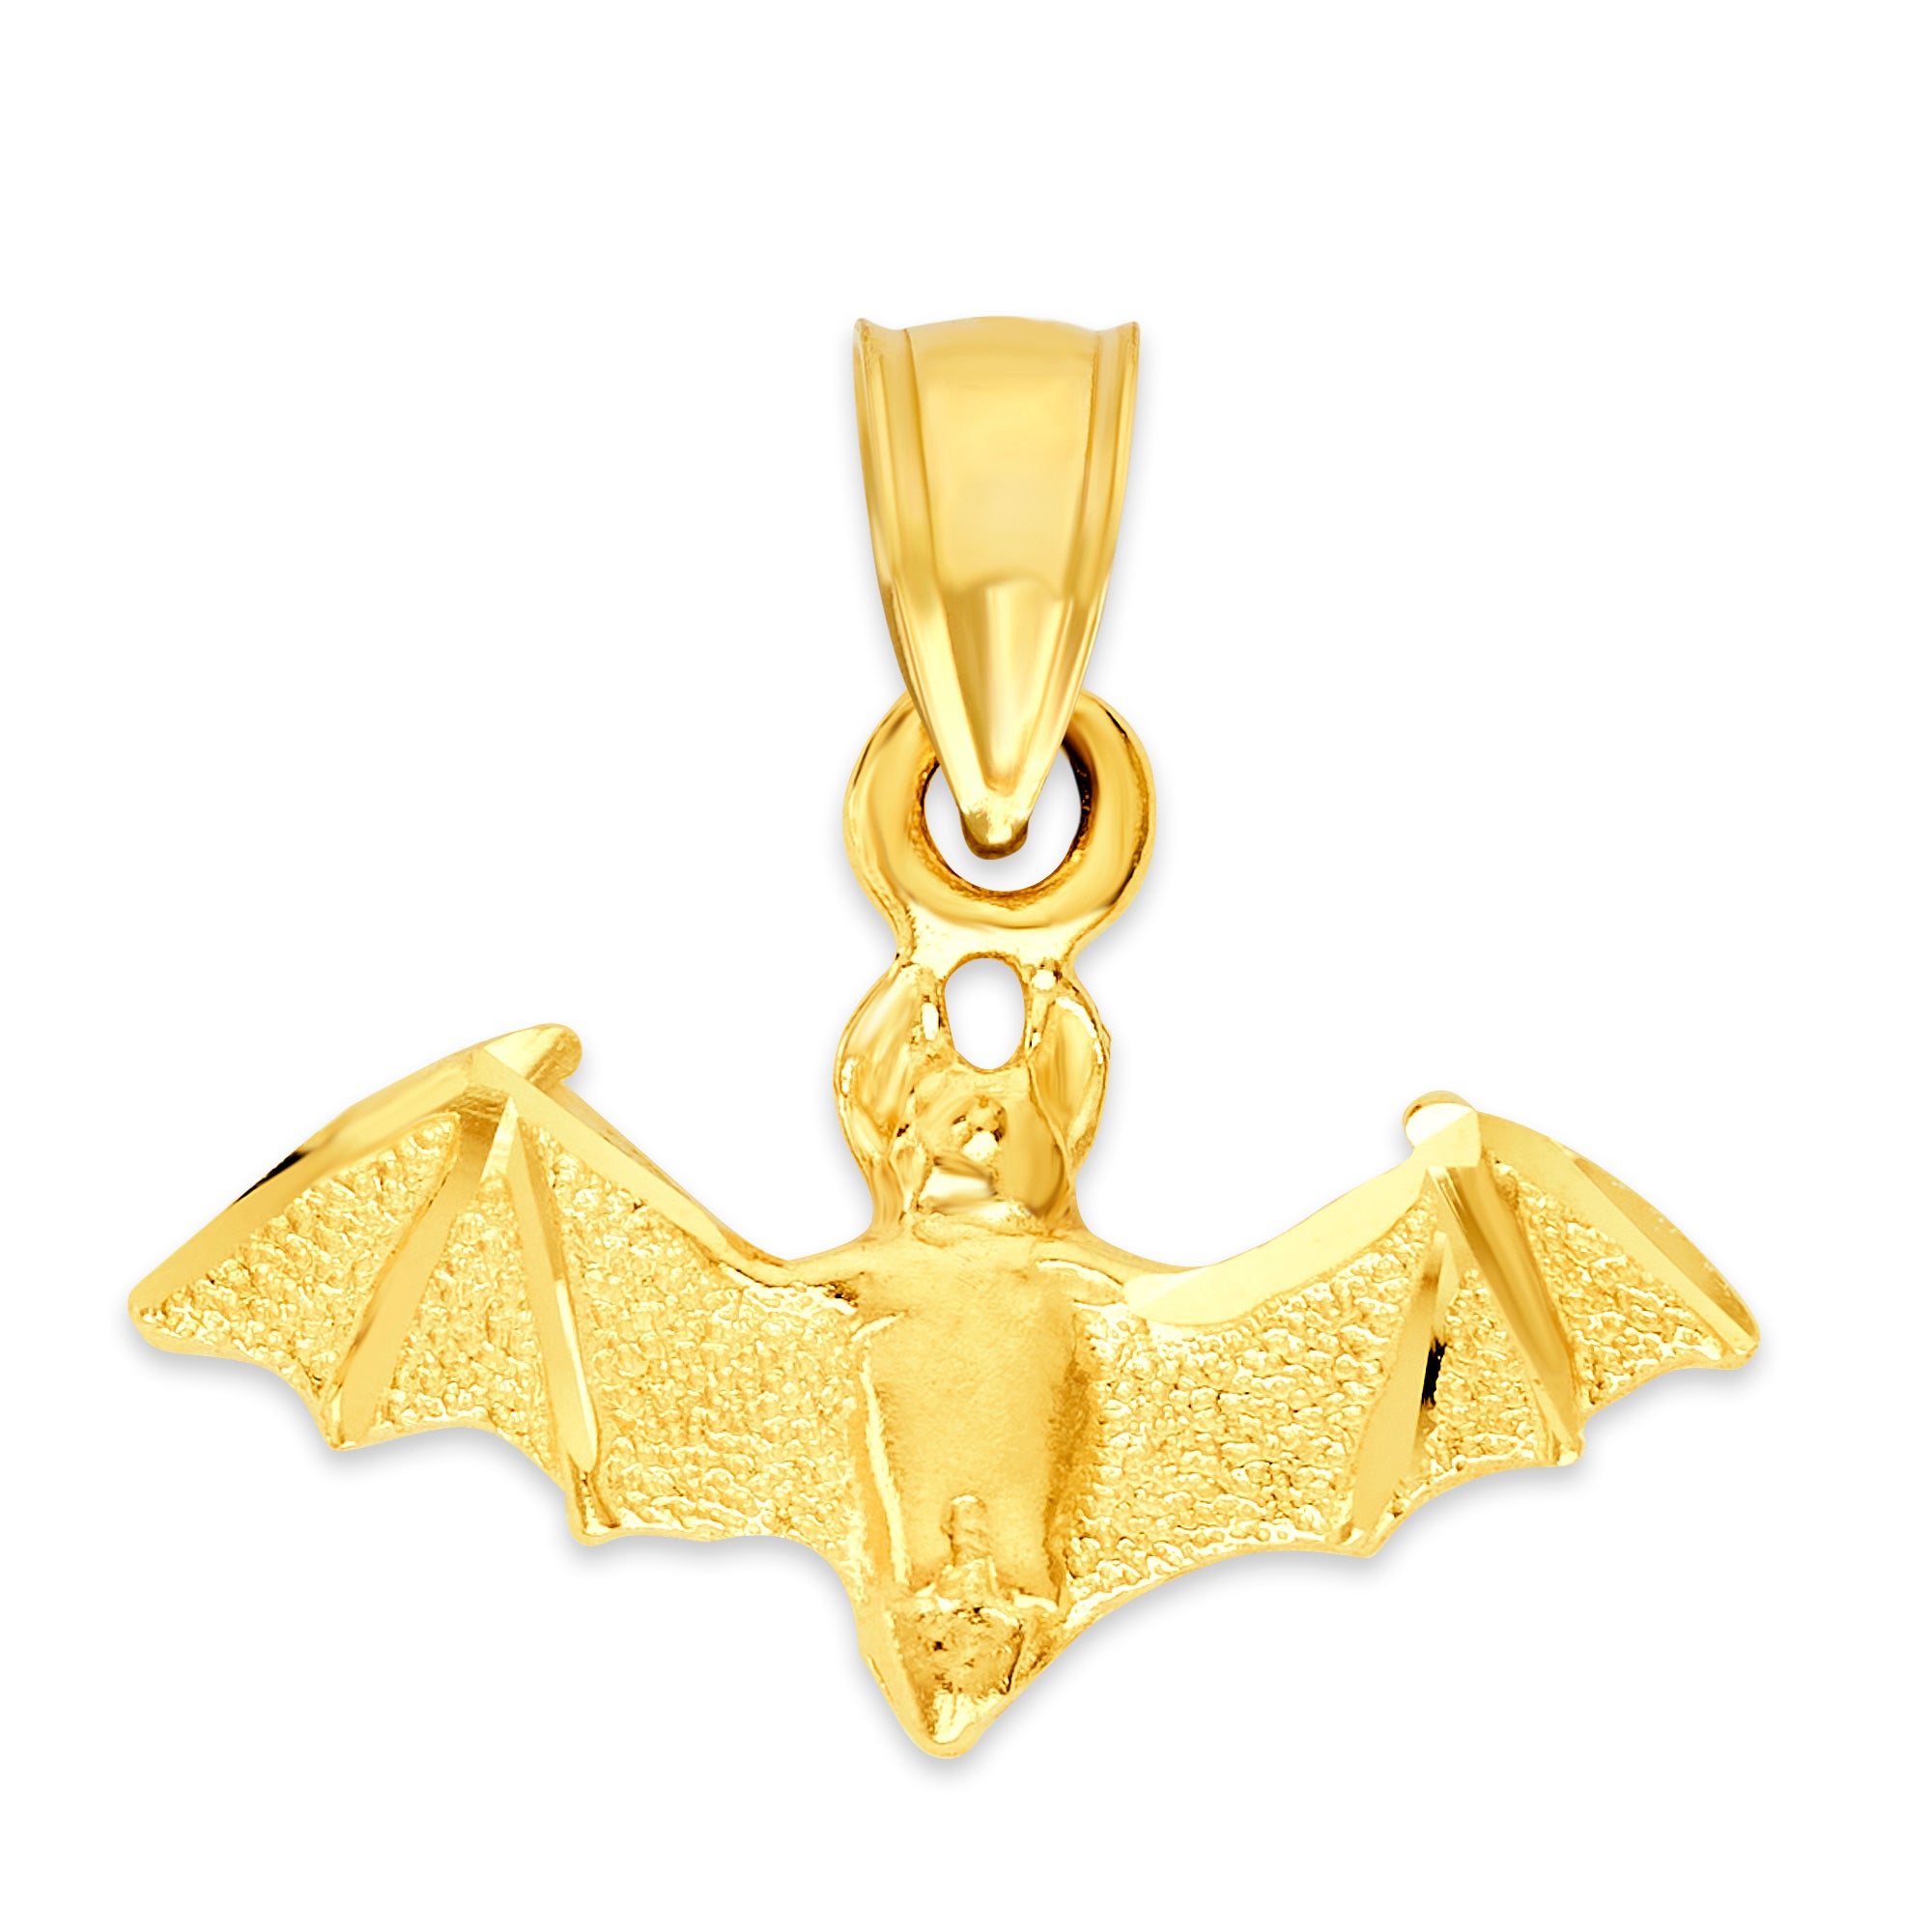 Solid Gold Bat Pendant - 10k or 14k